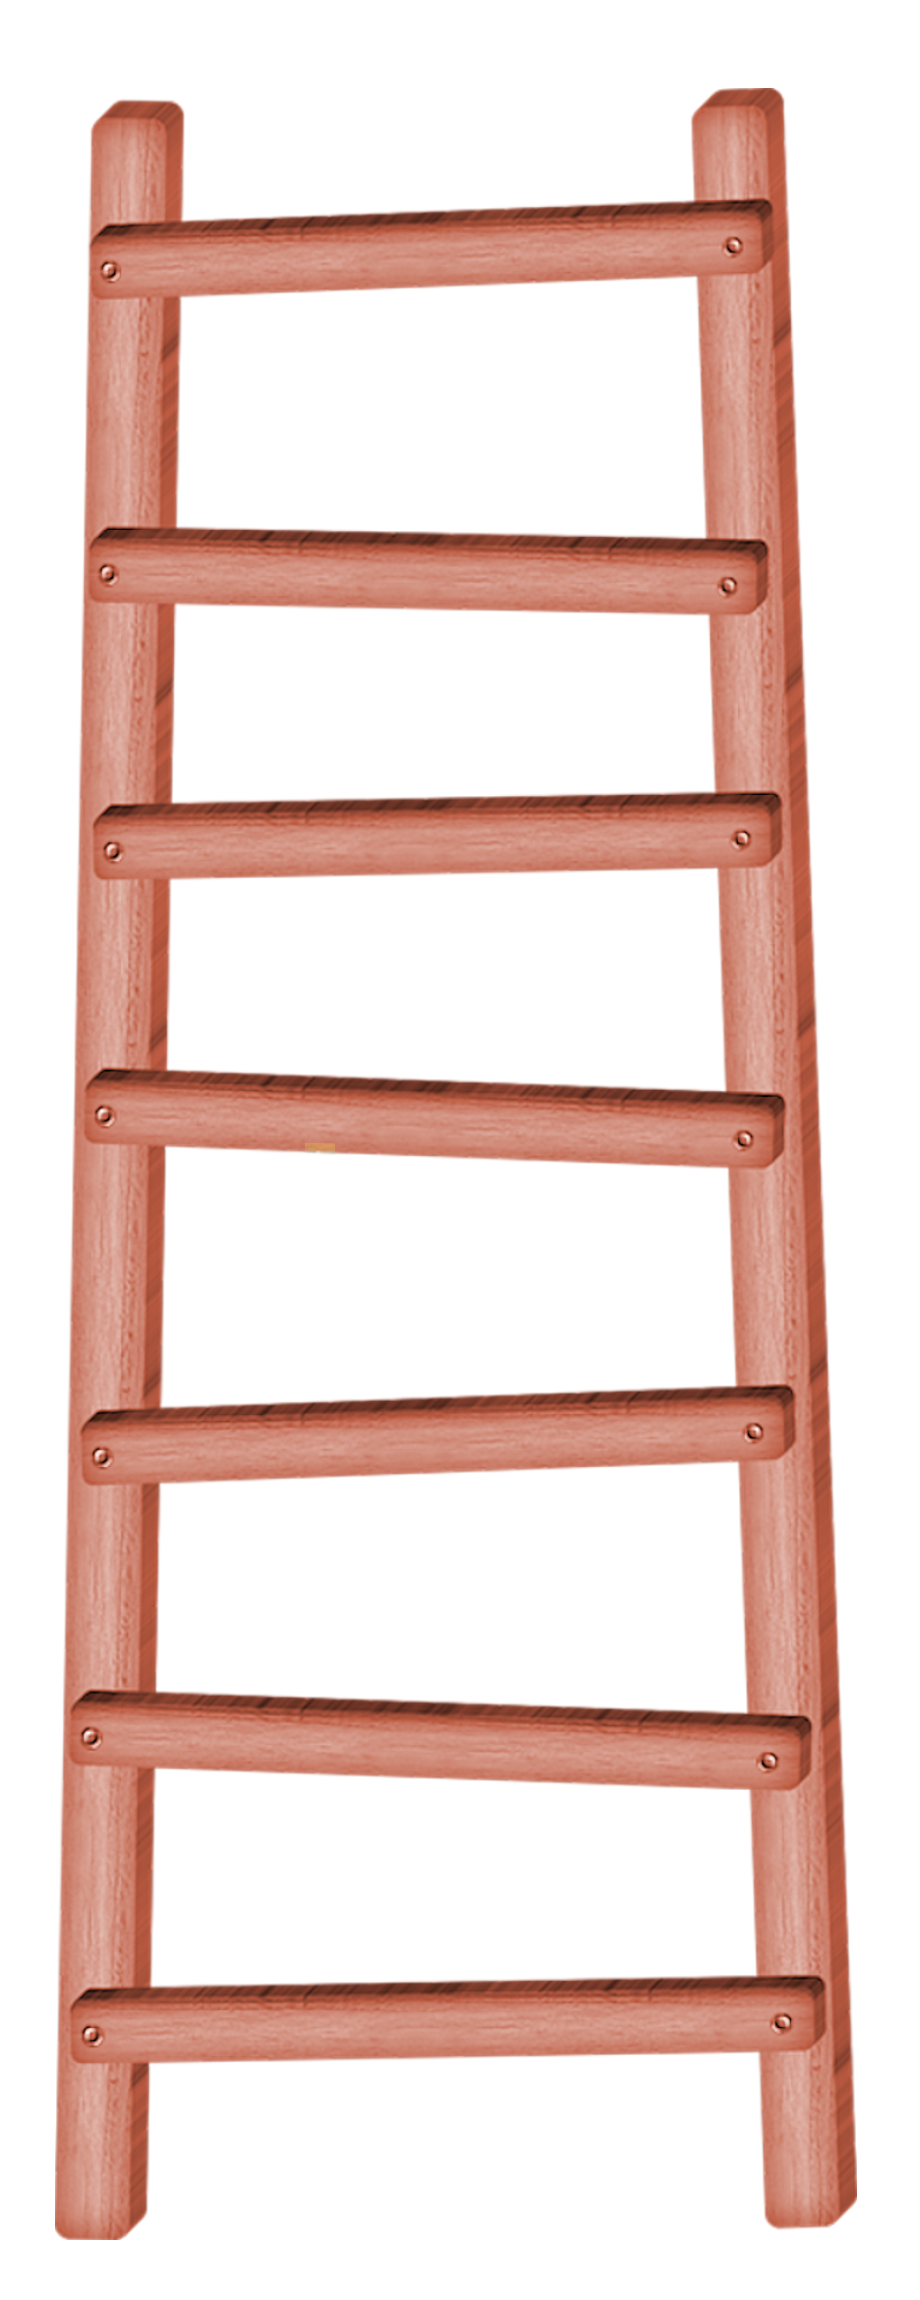 Ladder PNG Image